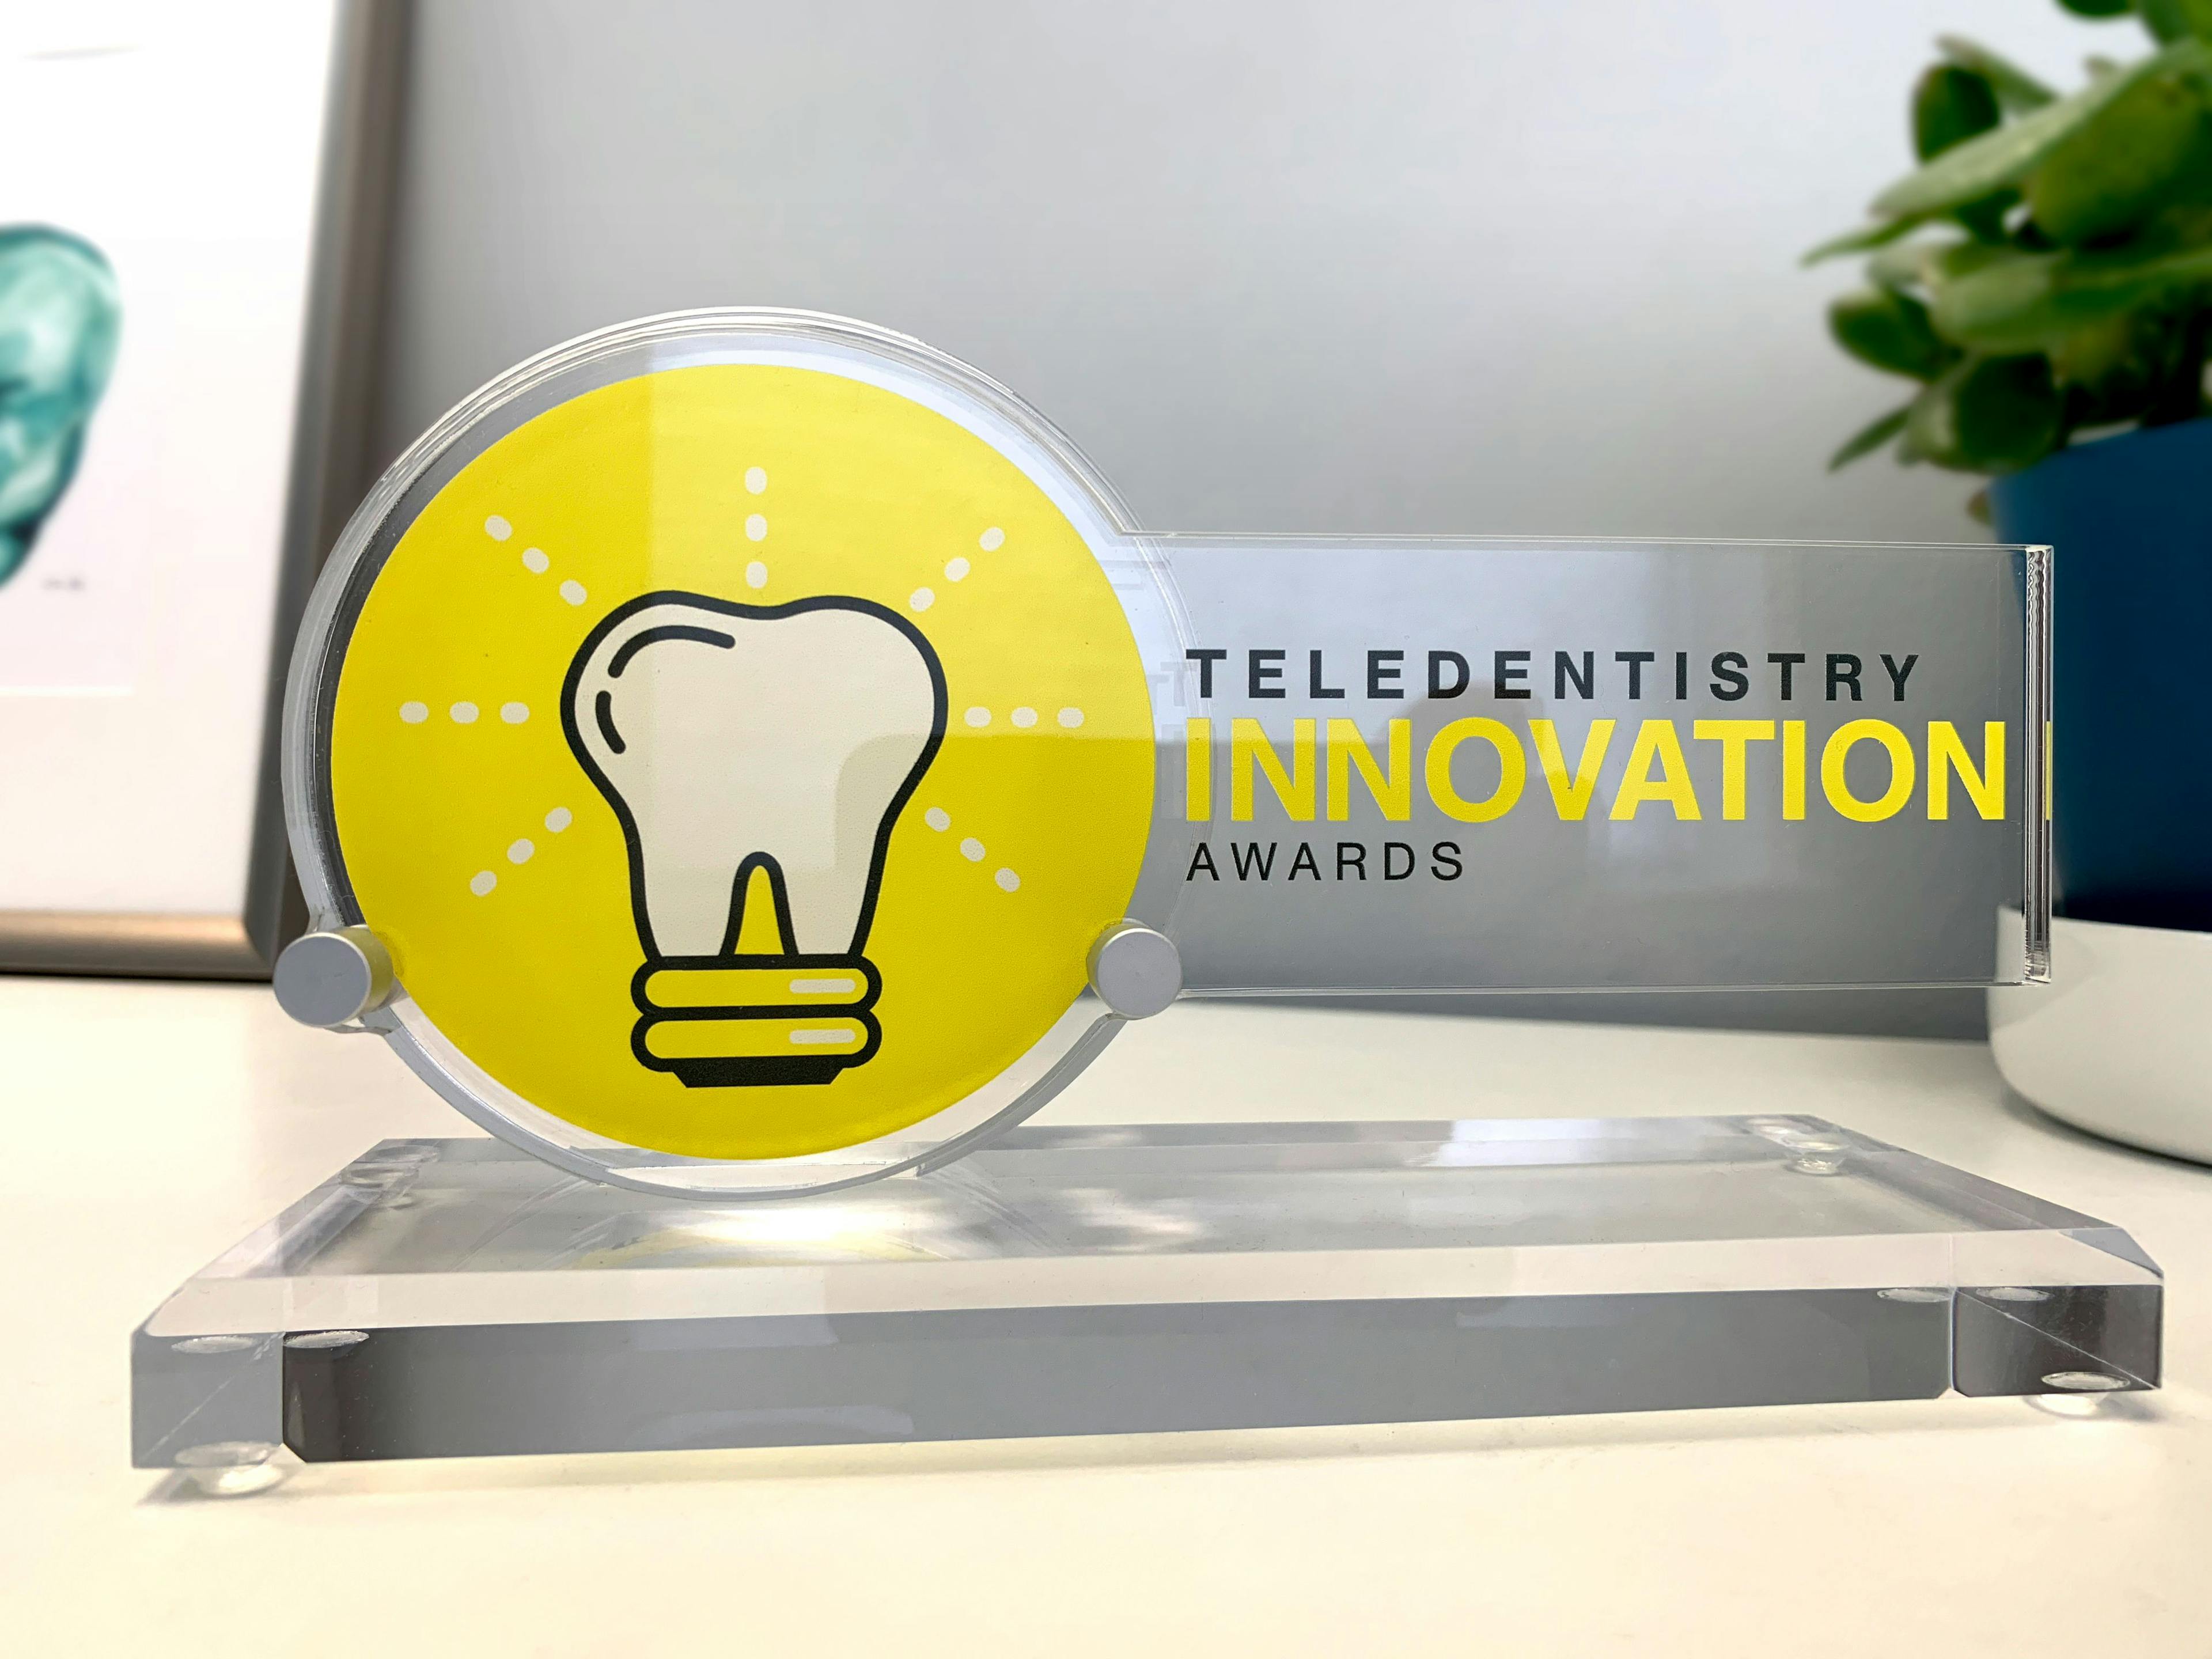 Teledentistry Innovation Awards